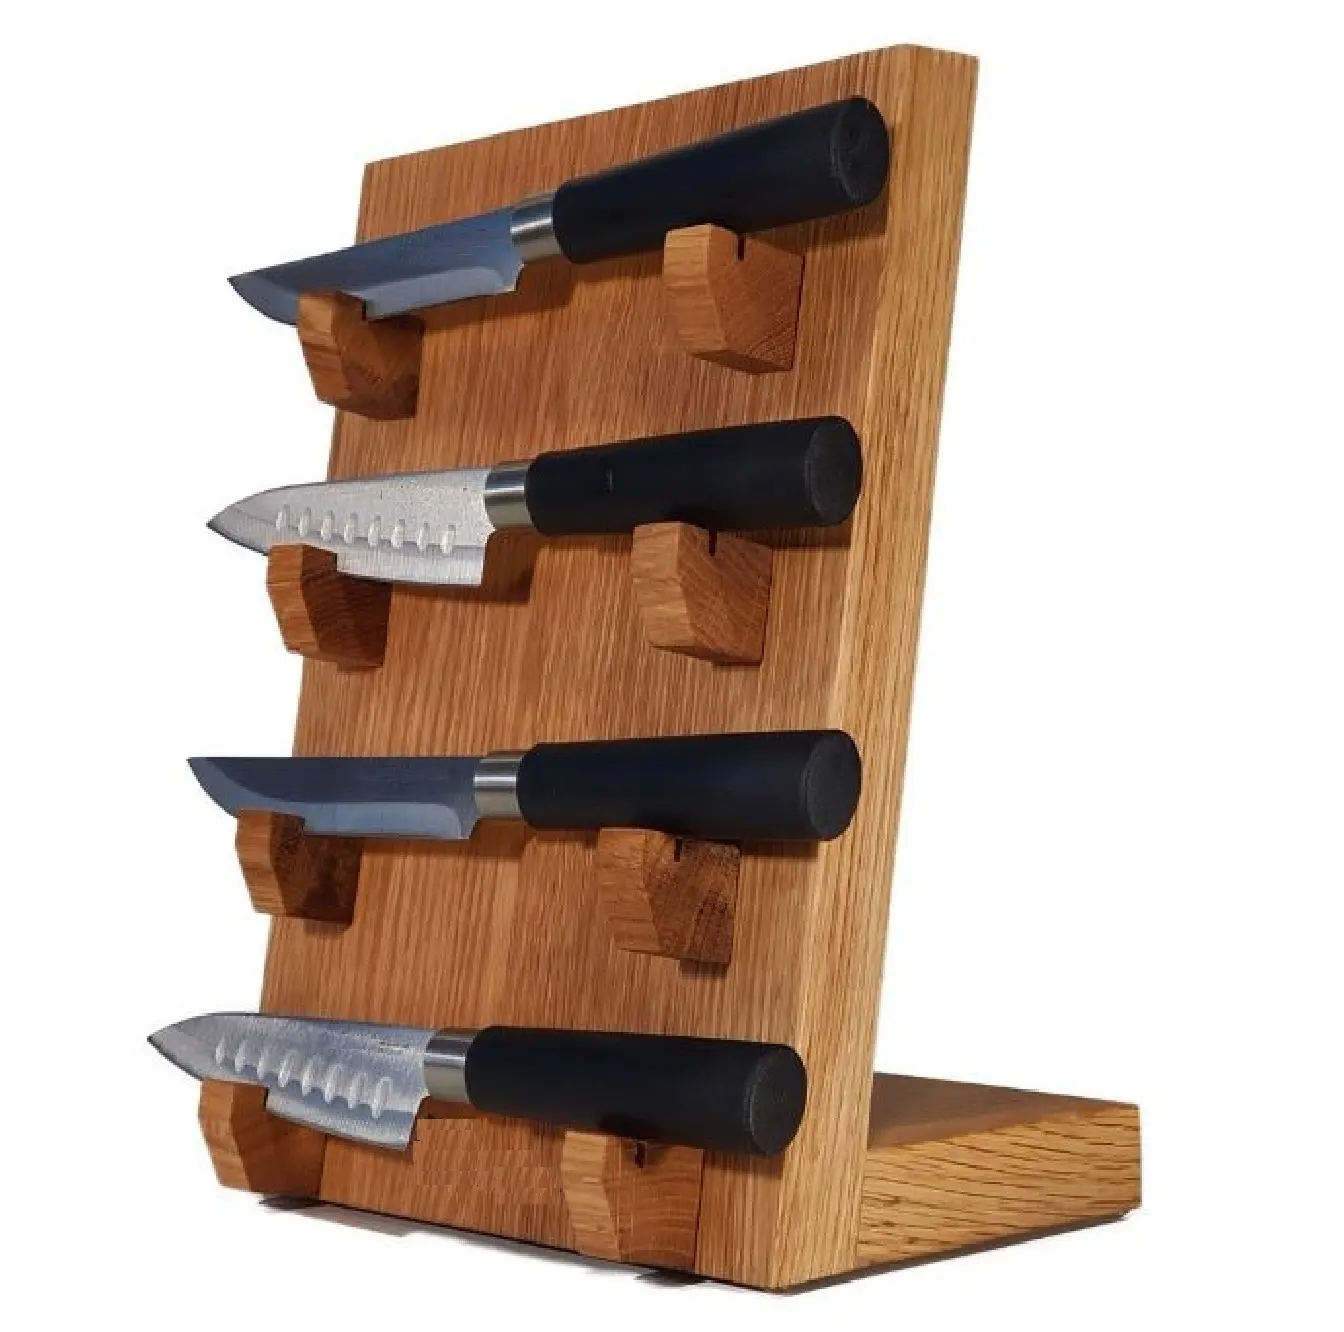 Holzmesser Display Stand Messer Set mit schwarzer Farbe Griff Küchen geschirr Schneid utensilien mit Platzierung block Display Stand